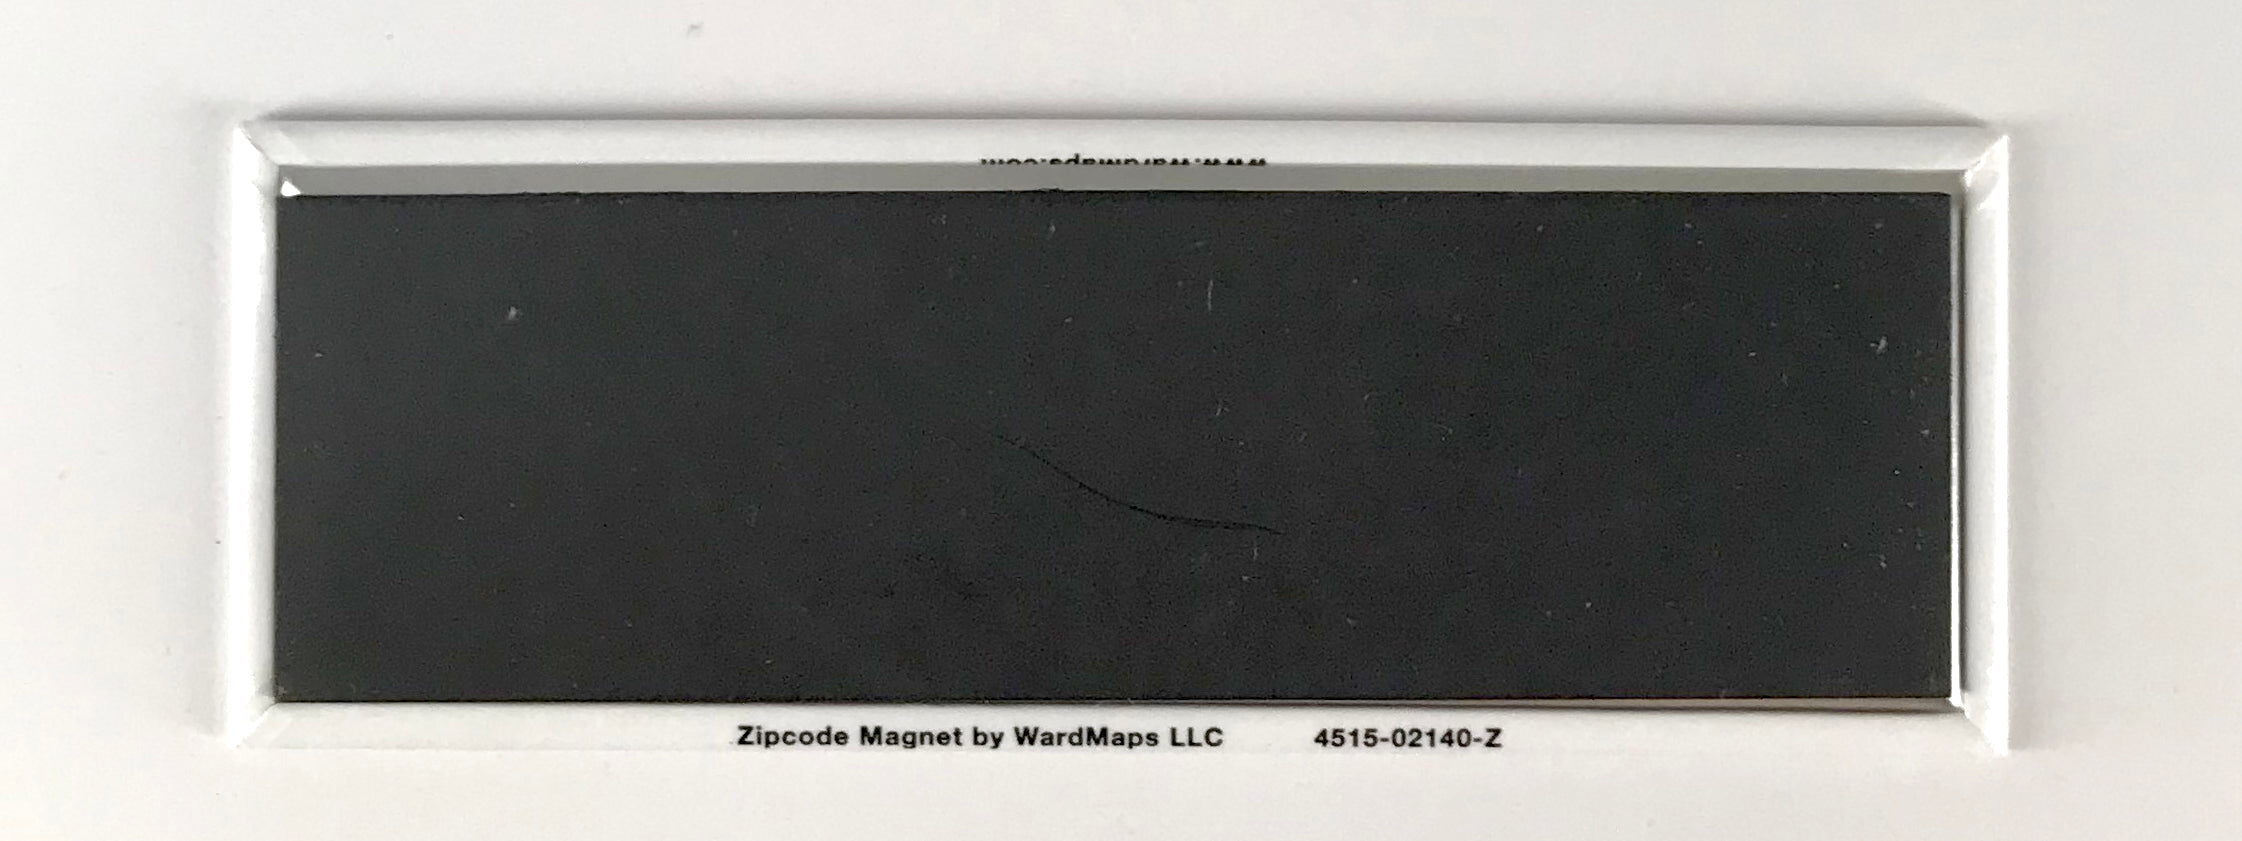 02141 (Cambridge, Massachusetts) ZIP Code Magnet